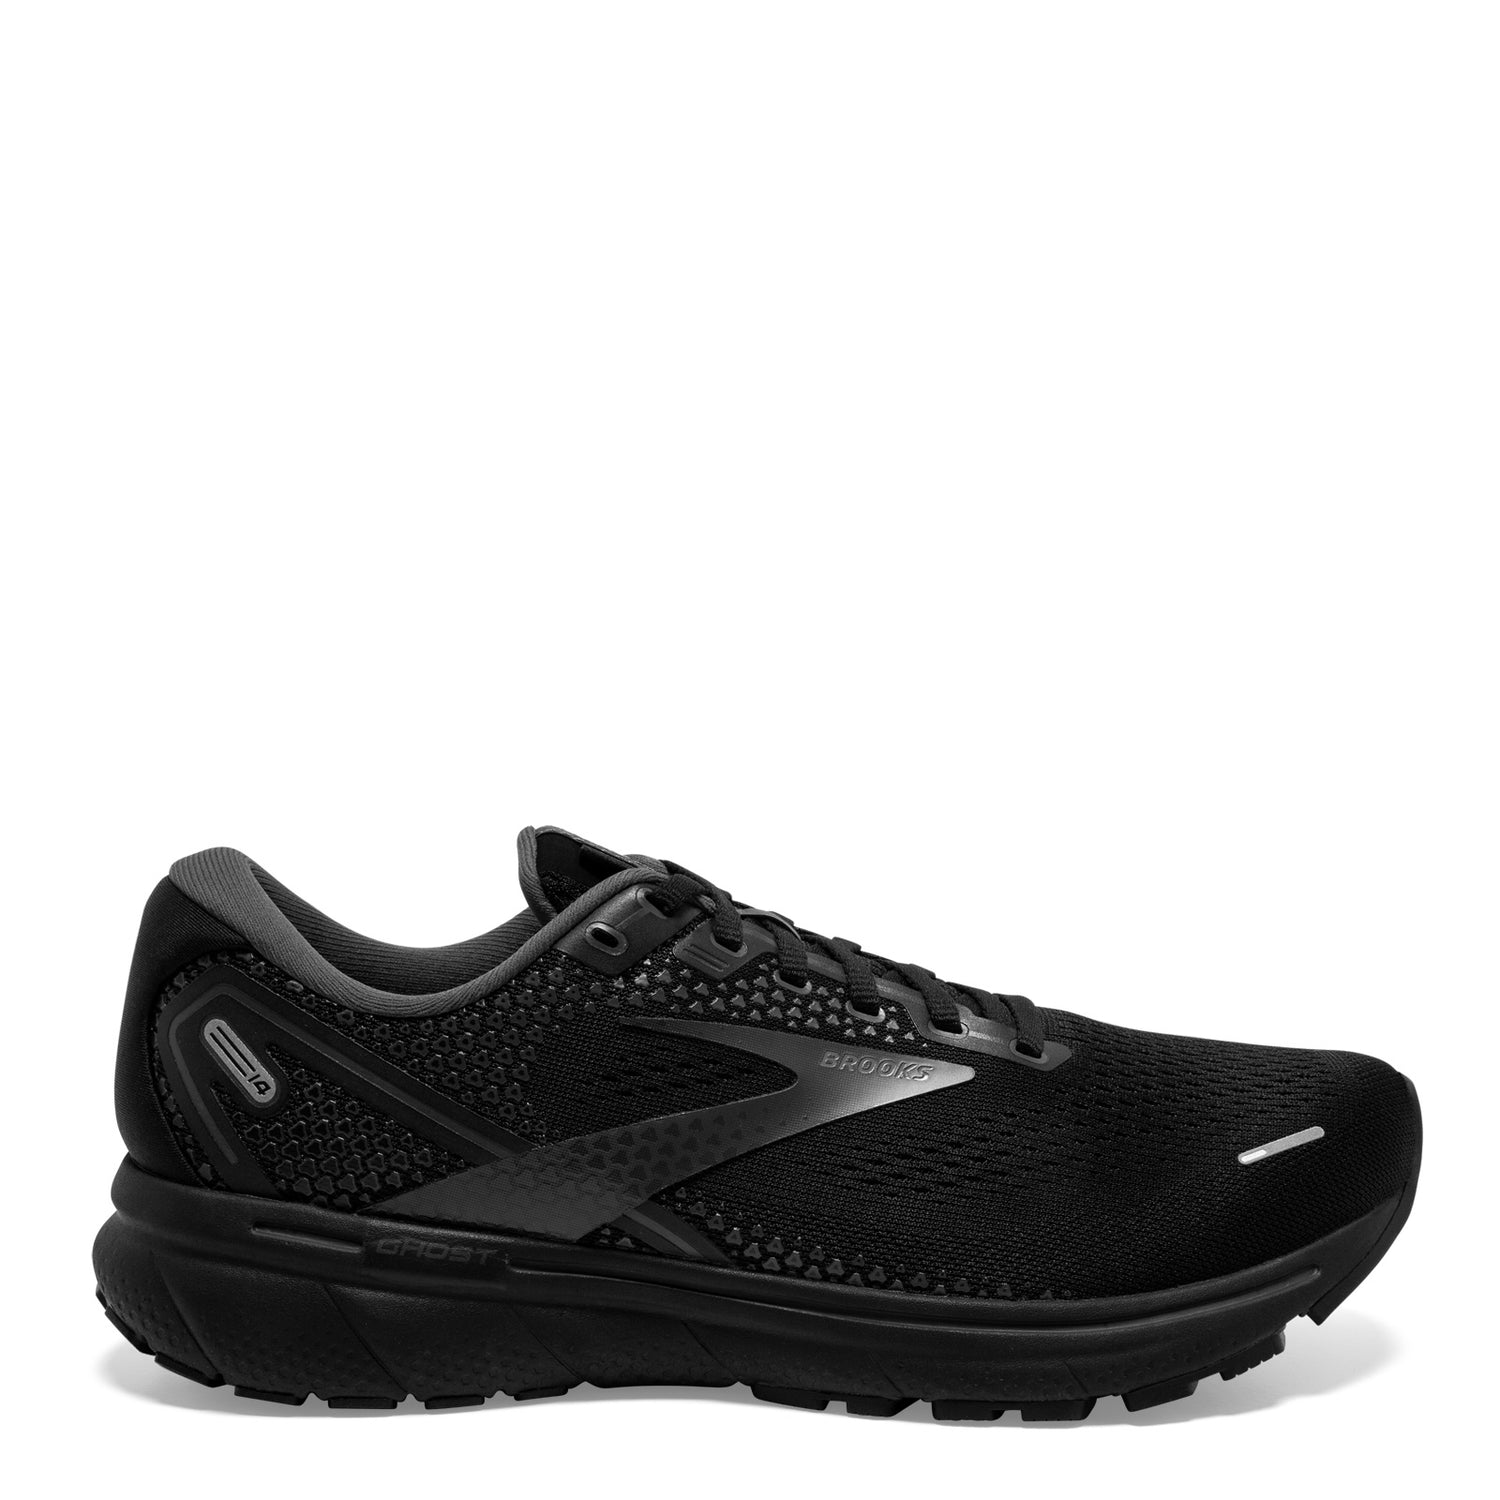 Peltz Shoes  Men's Brooks Ghost 14 Running Shoe - Wide Width Black/Ebony 110369 2E 020